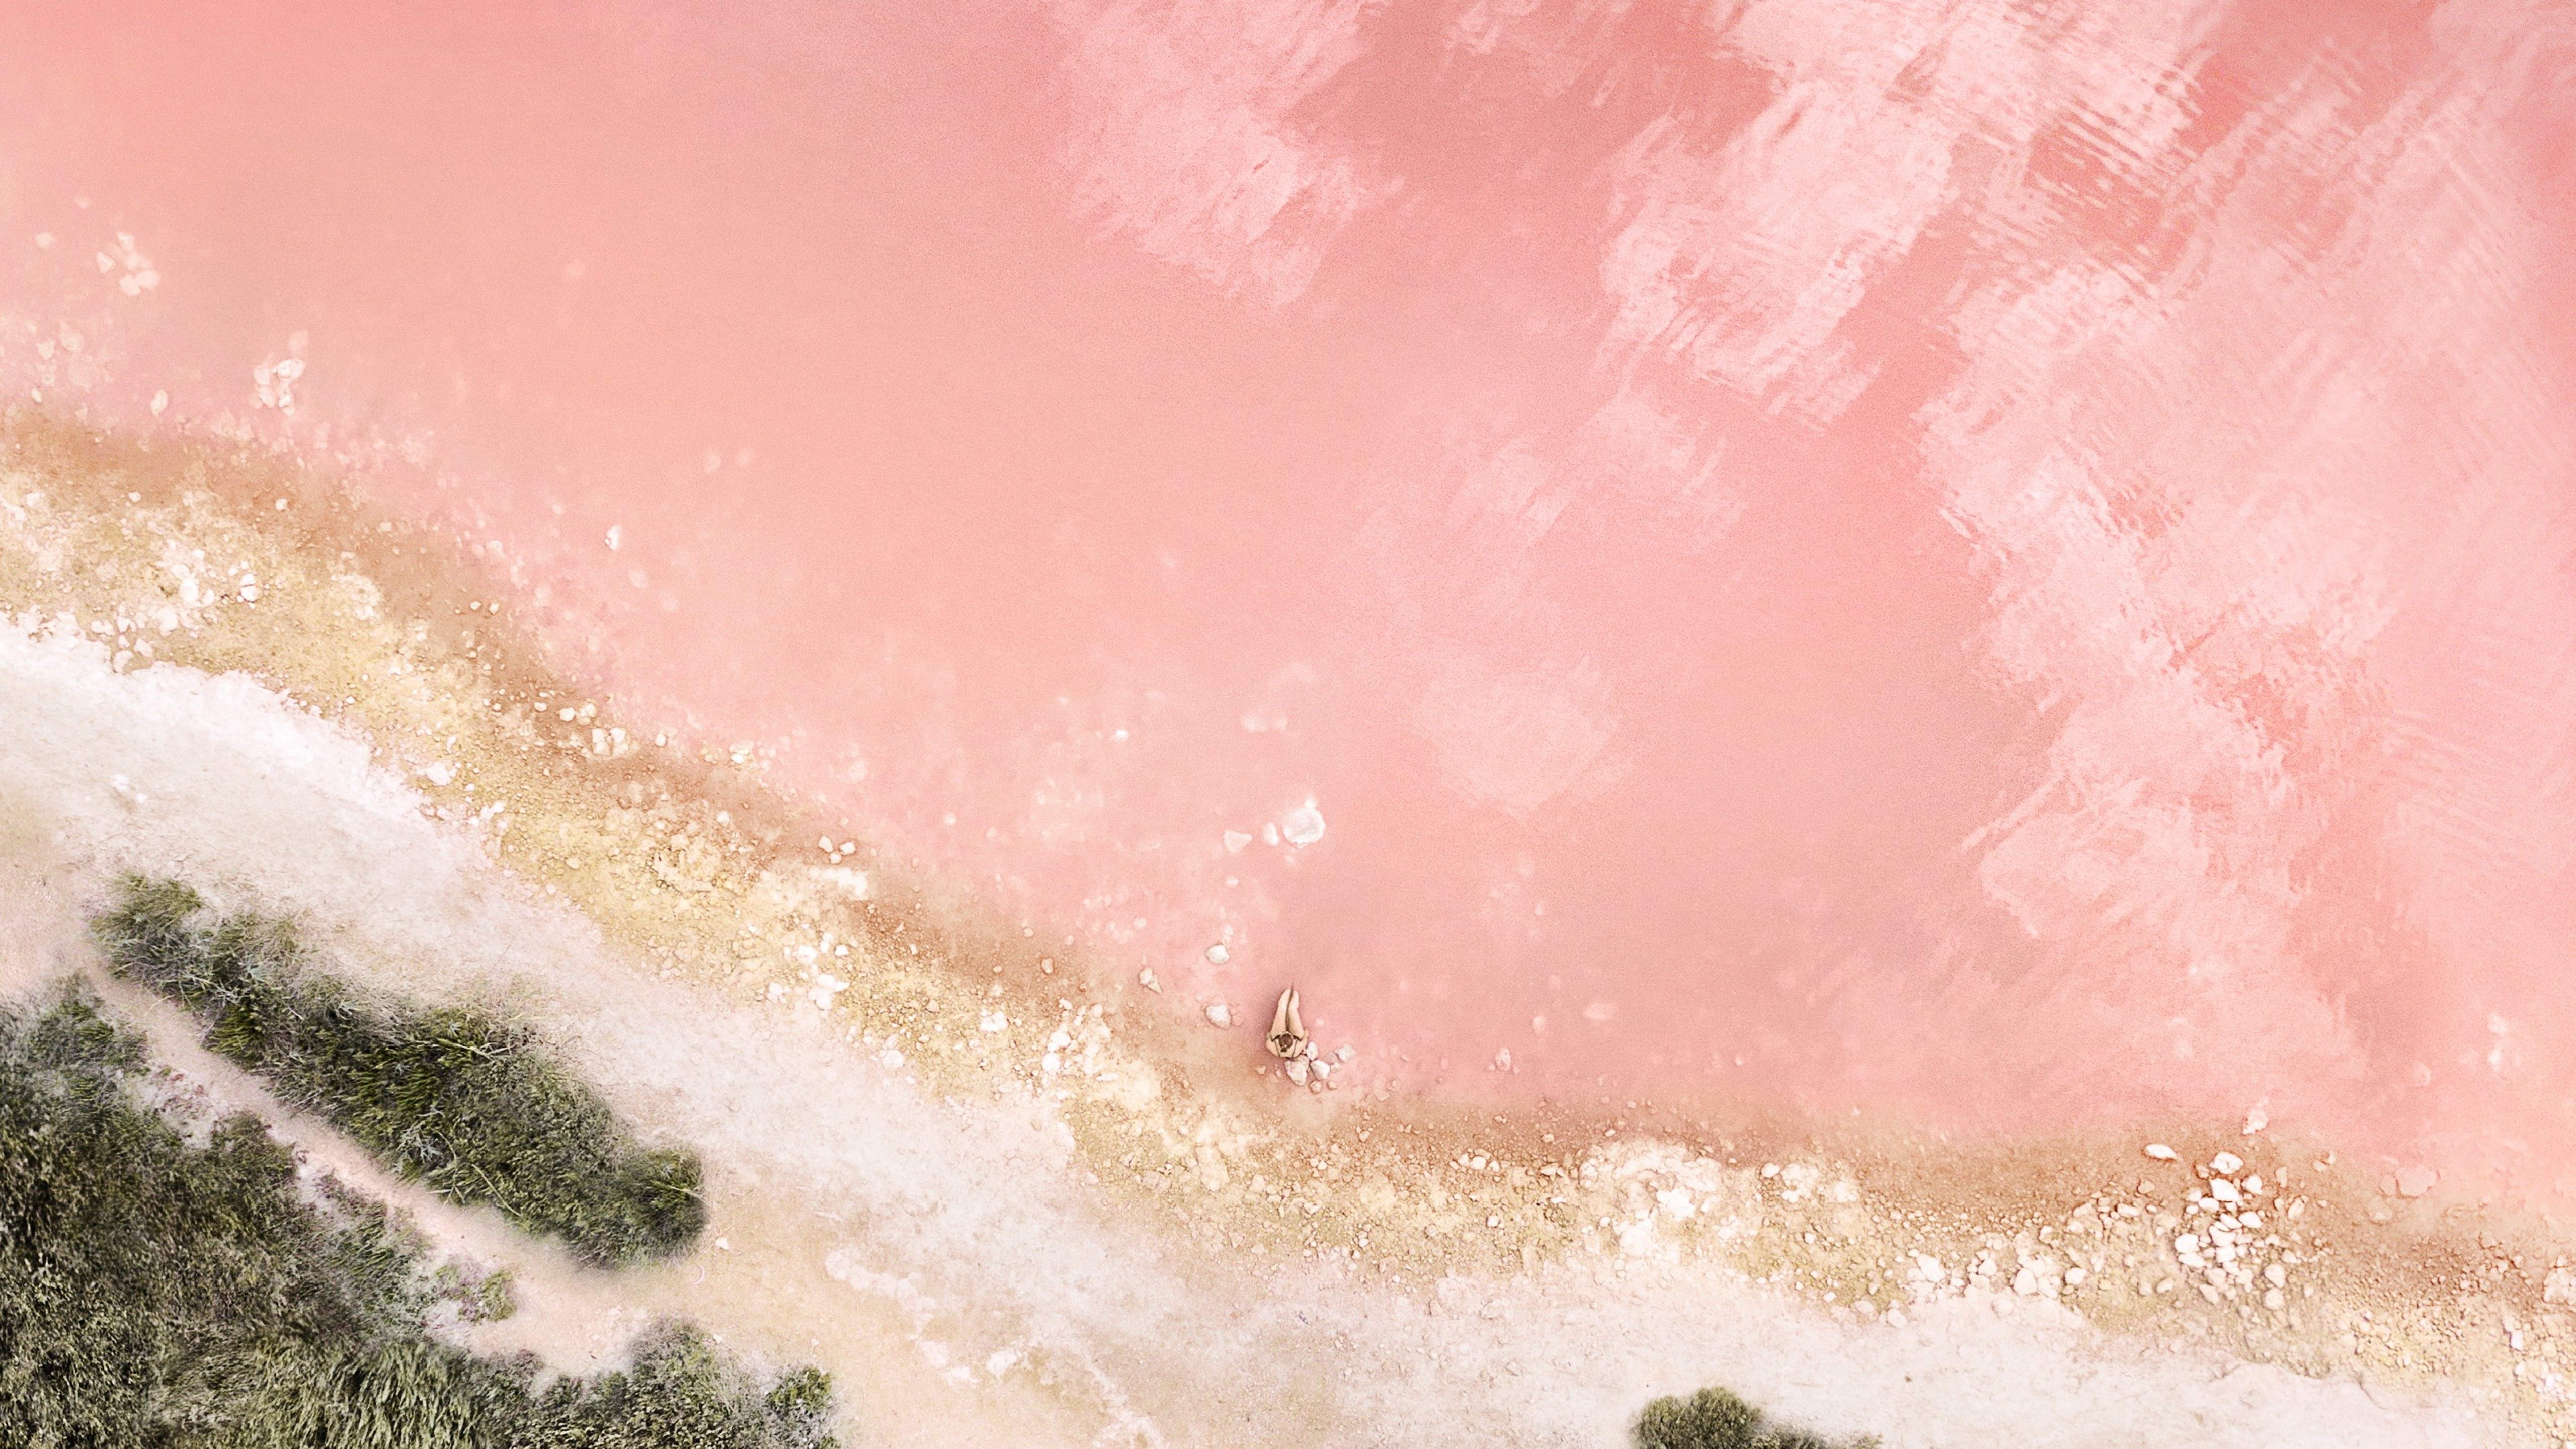 Pink Ocean Wallpaper Images  Free Download on Freepik